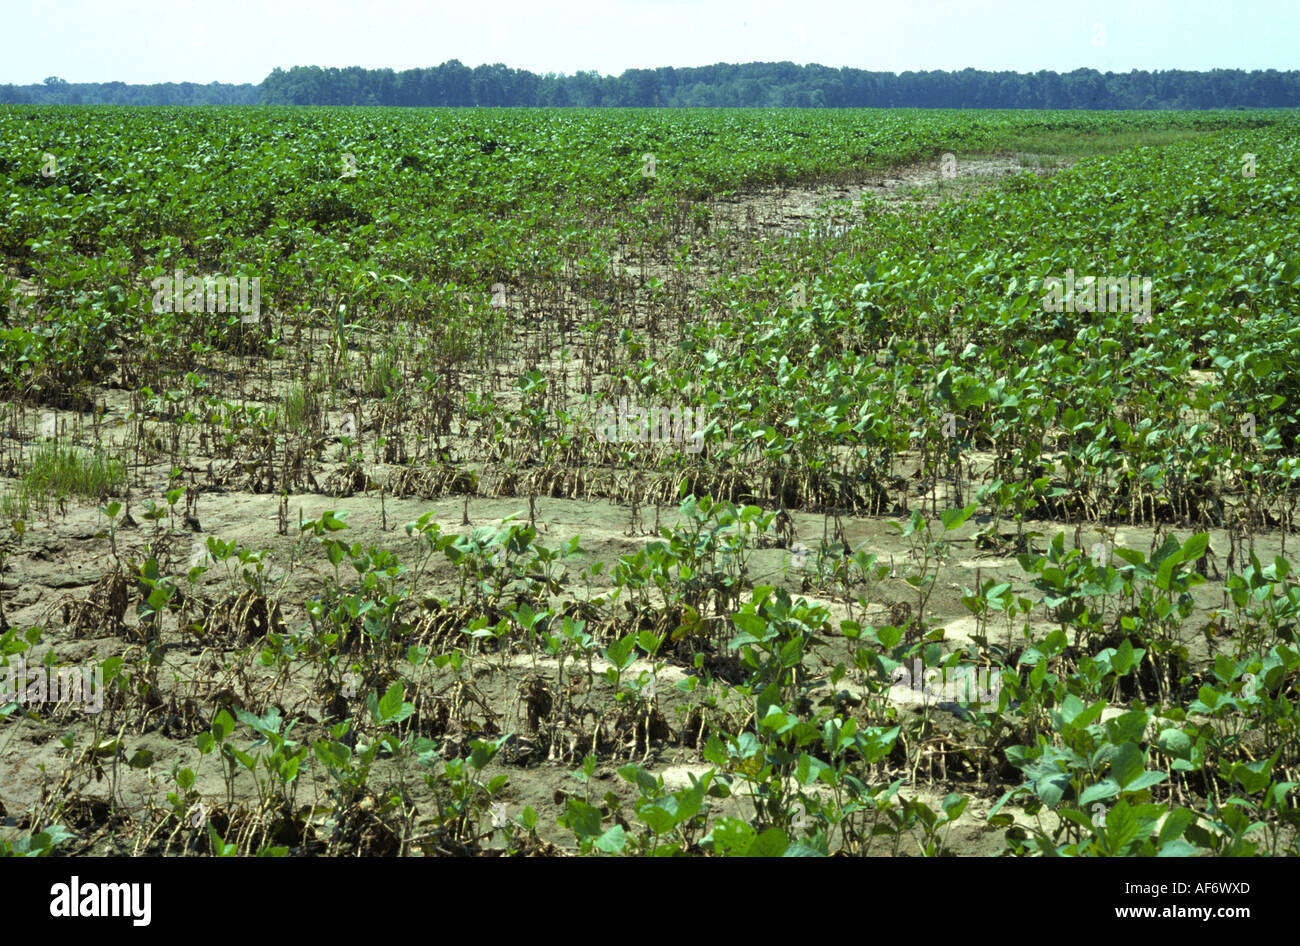 Junge Sojabohnen Ernte stark betroffen durch Starkregen Mississippi USA Stockfoto